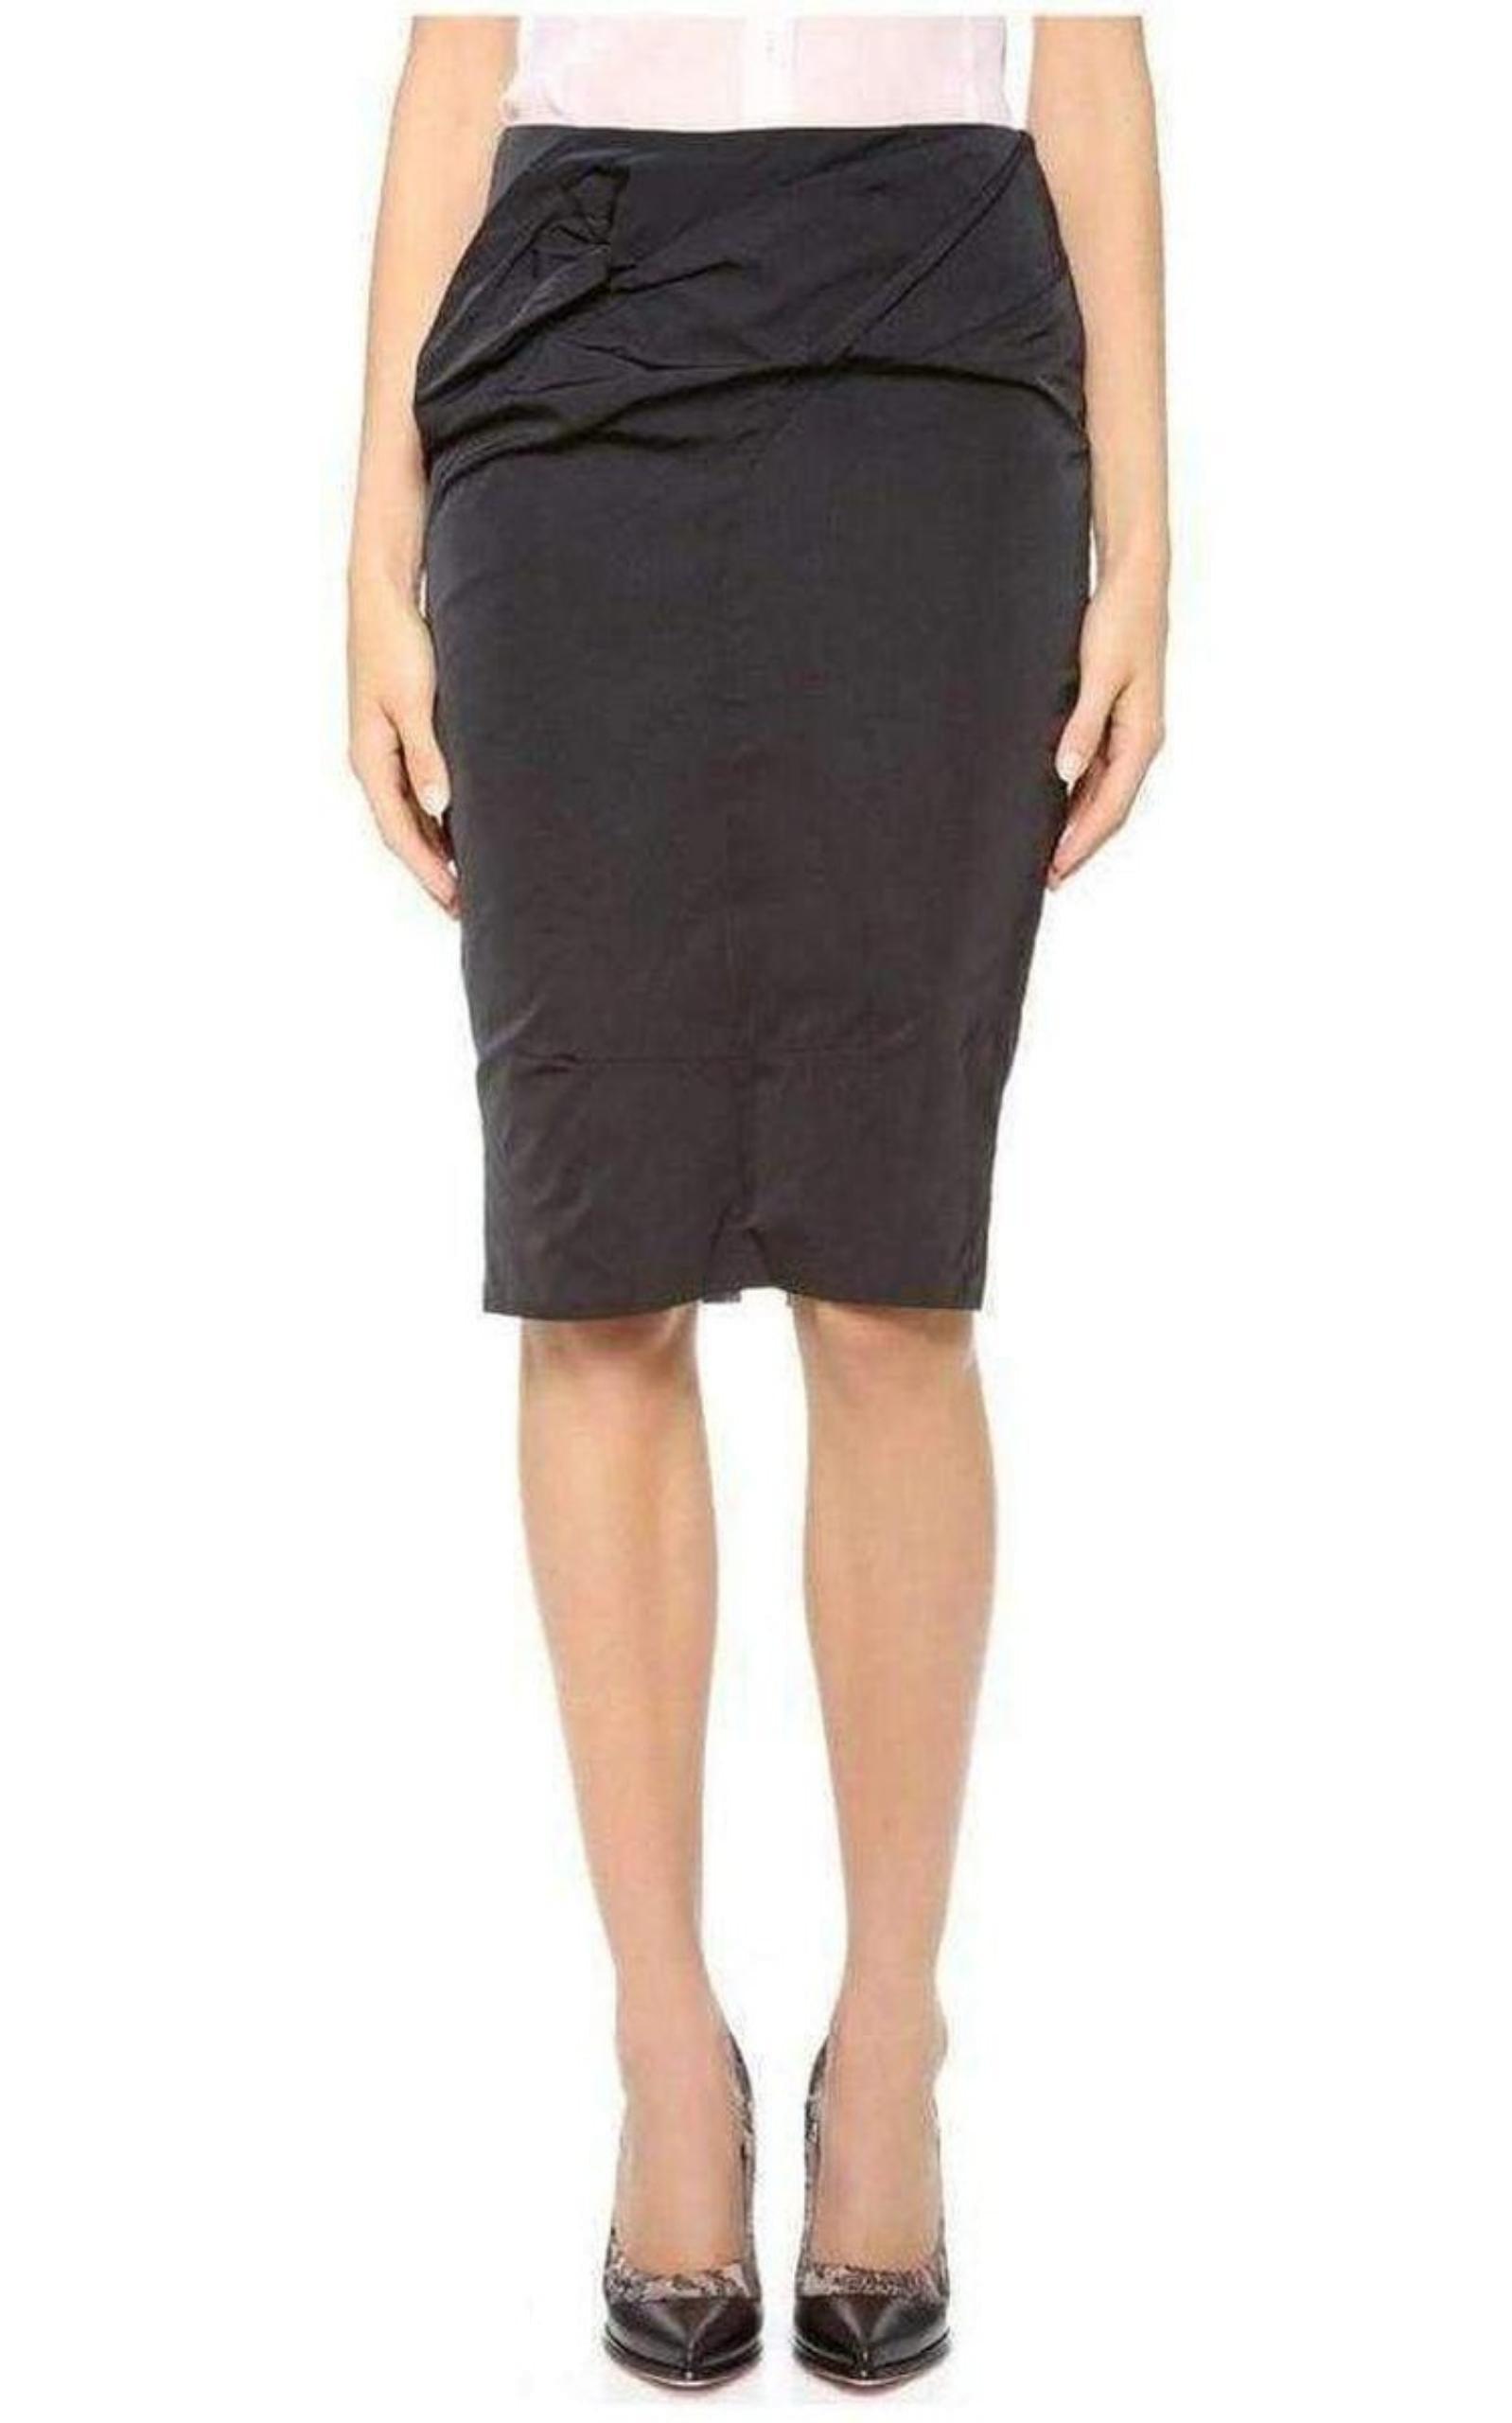  Nina RicciBlack Lace Lined Pencil Skirt - Runway Catalog